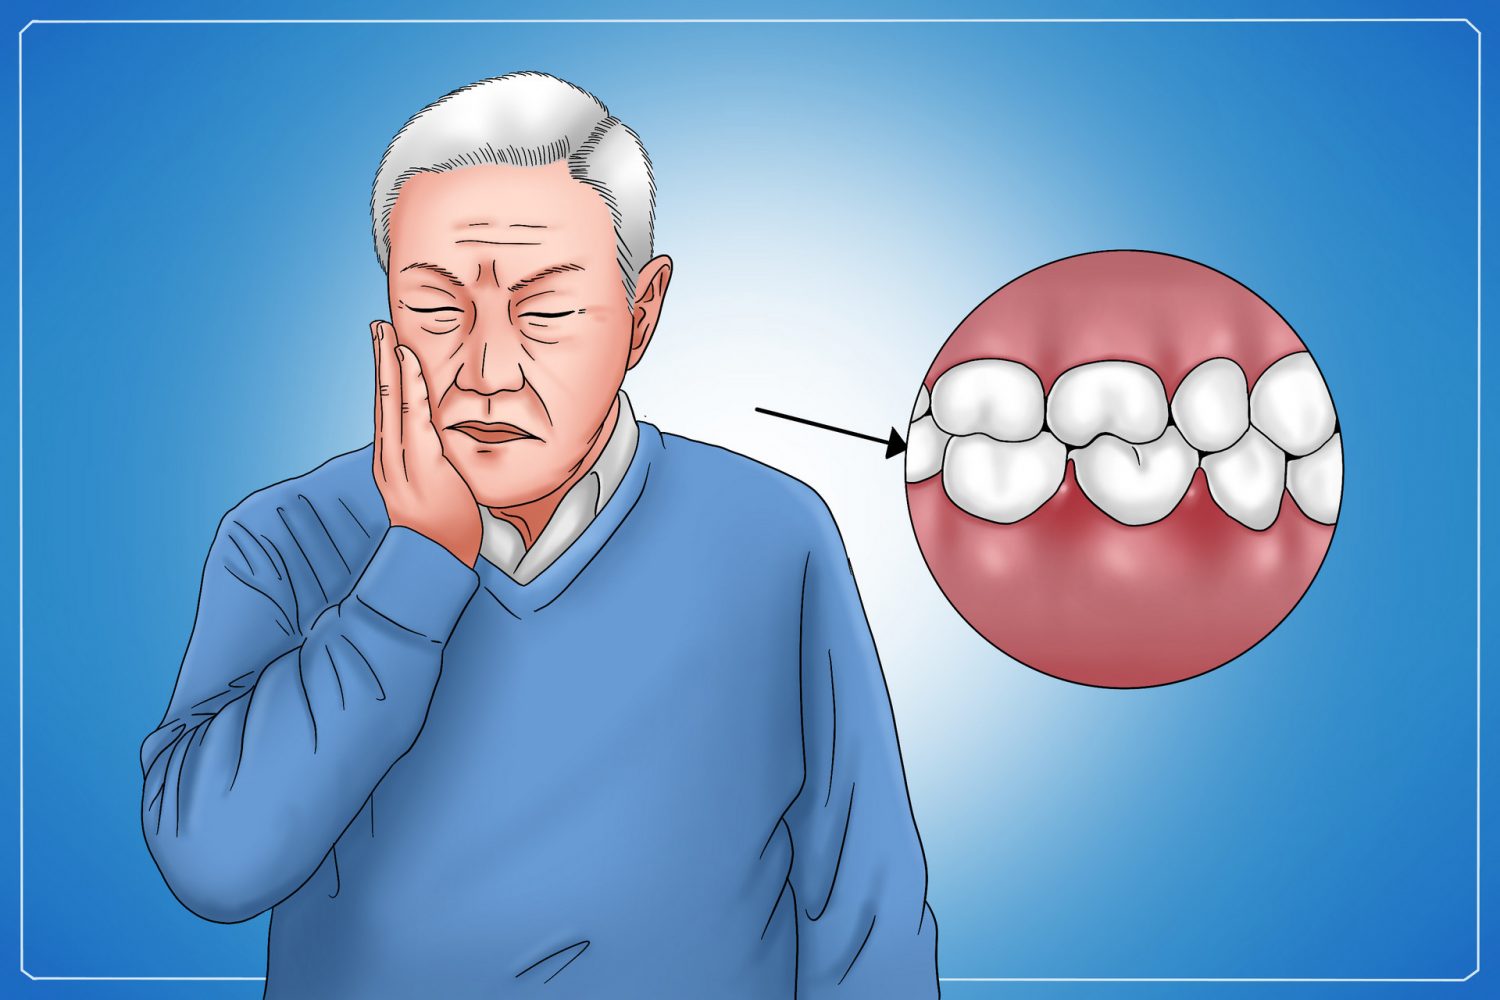 牙周病症状,牙周病,牙龈出血,牙龈红肿,牙齿松动,牙齿敏感